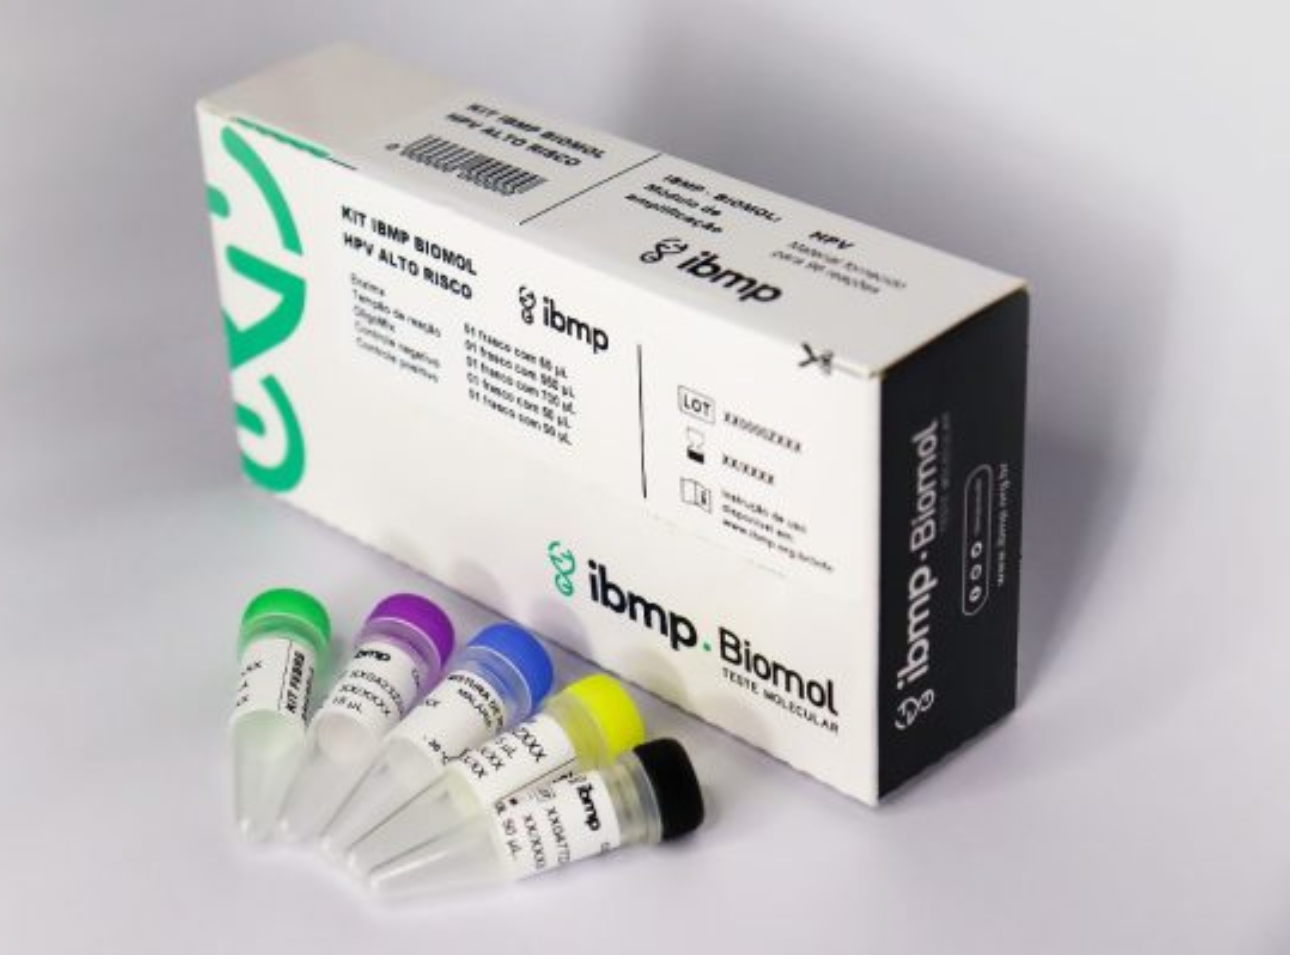 IBMP registra na Anvisa o Kit Biomol HPV Alto Risco – produto diagnóstico nacional pode contribuir para a redução do câncer de colo de útero